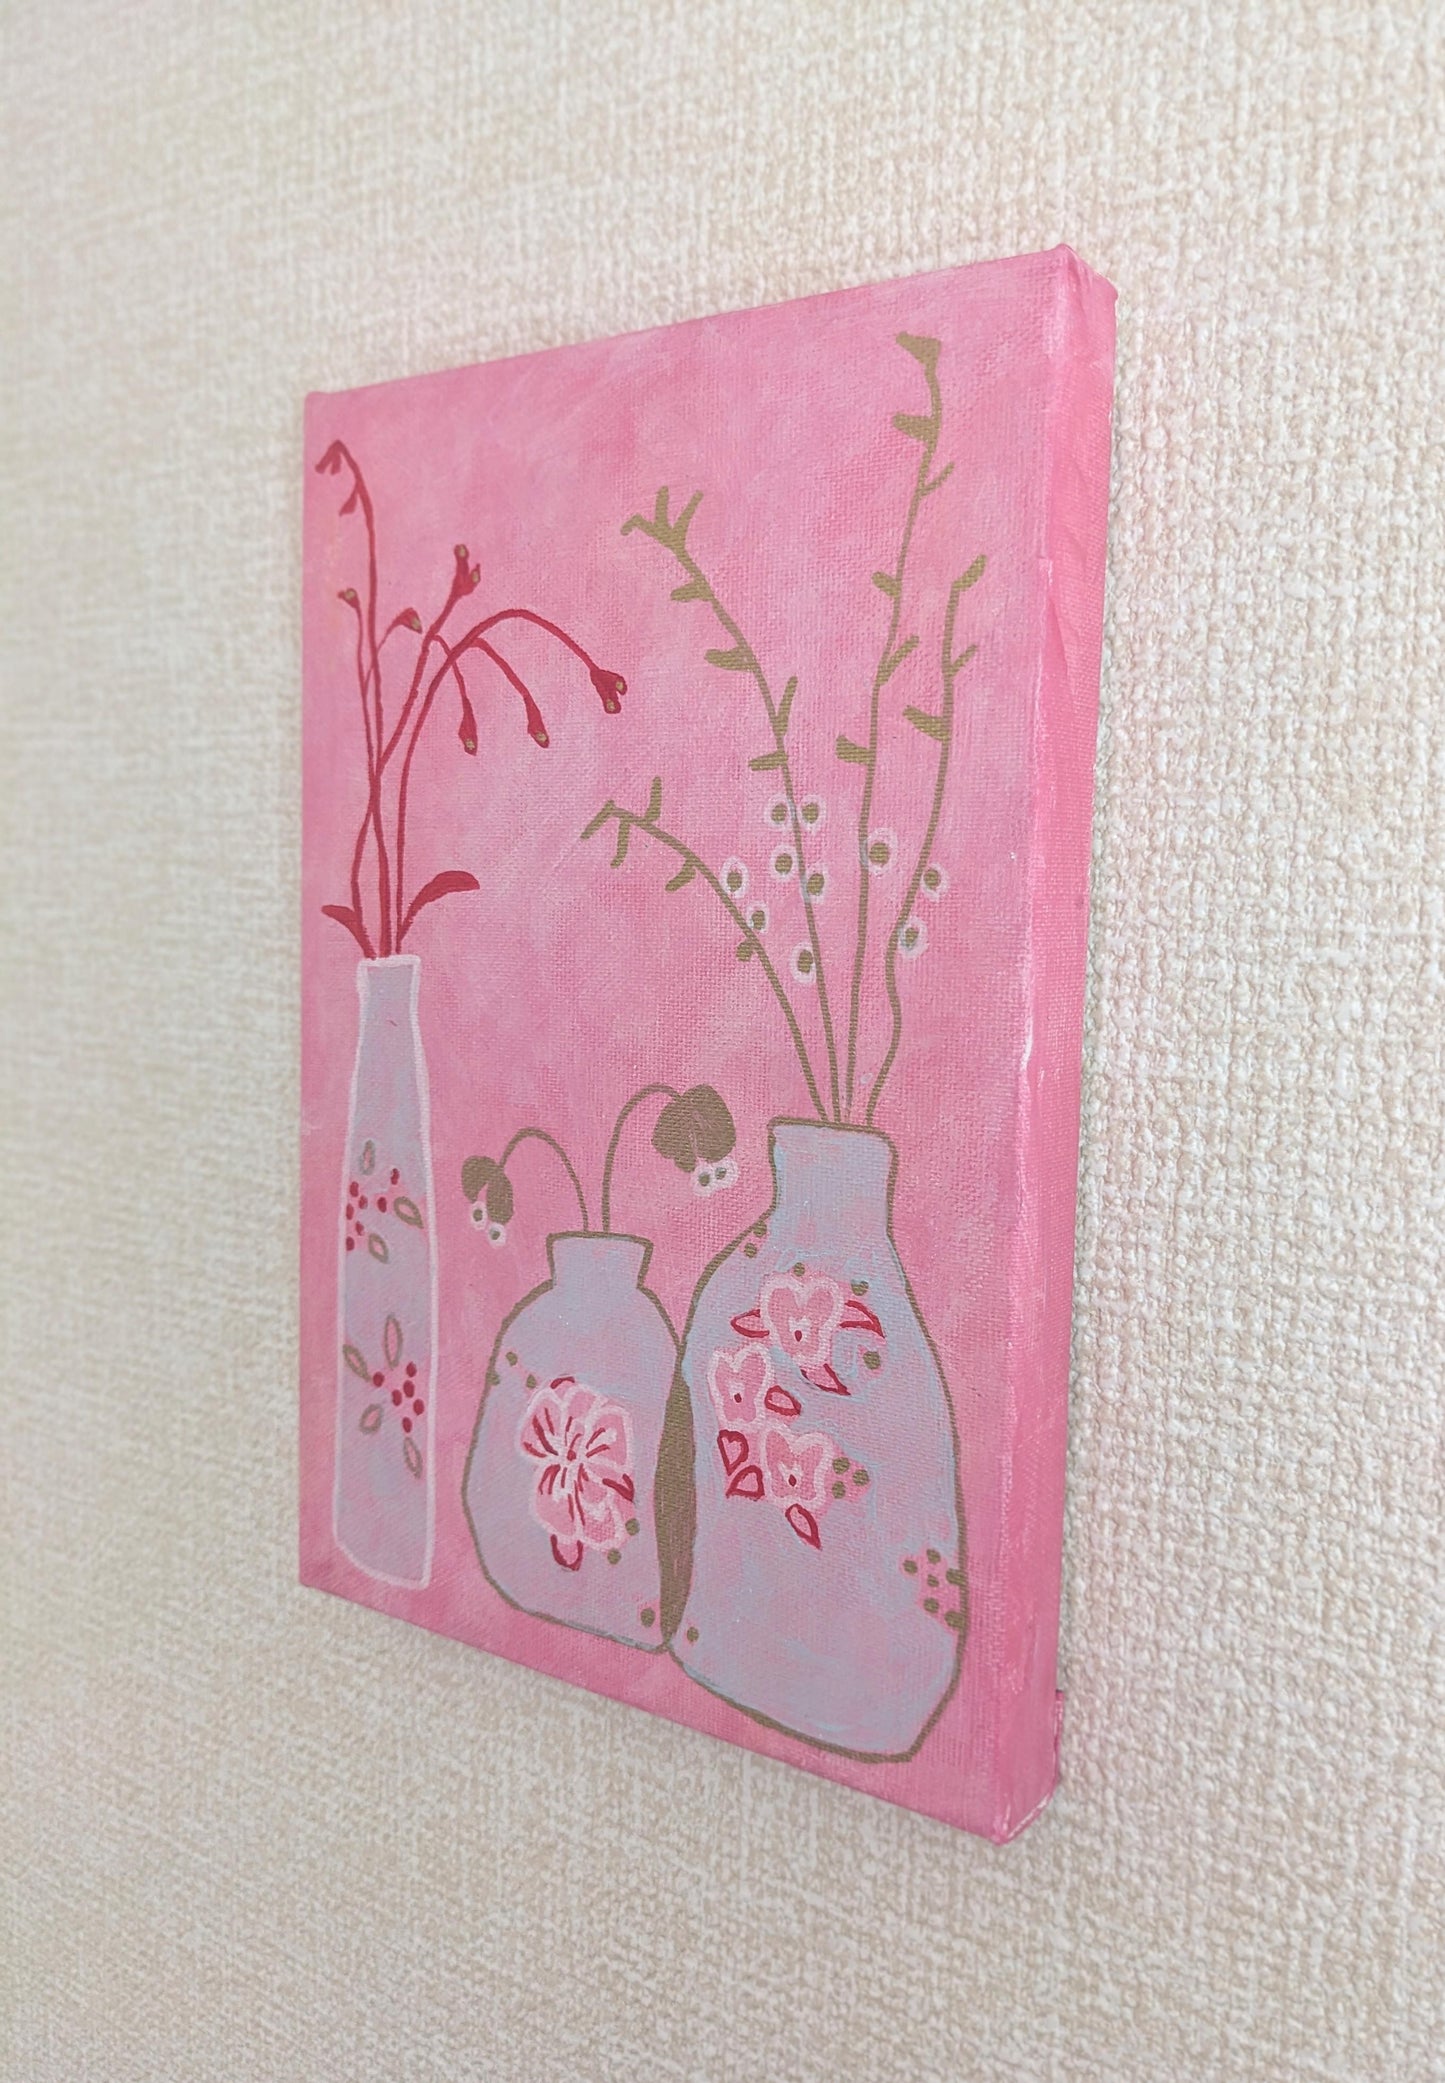 『春の訪れ　〜ボタニカル・ピンク〜(Spring has come -Botanical pink -)』 - FROM ARTIST